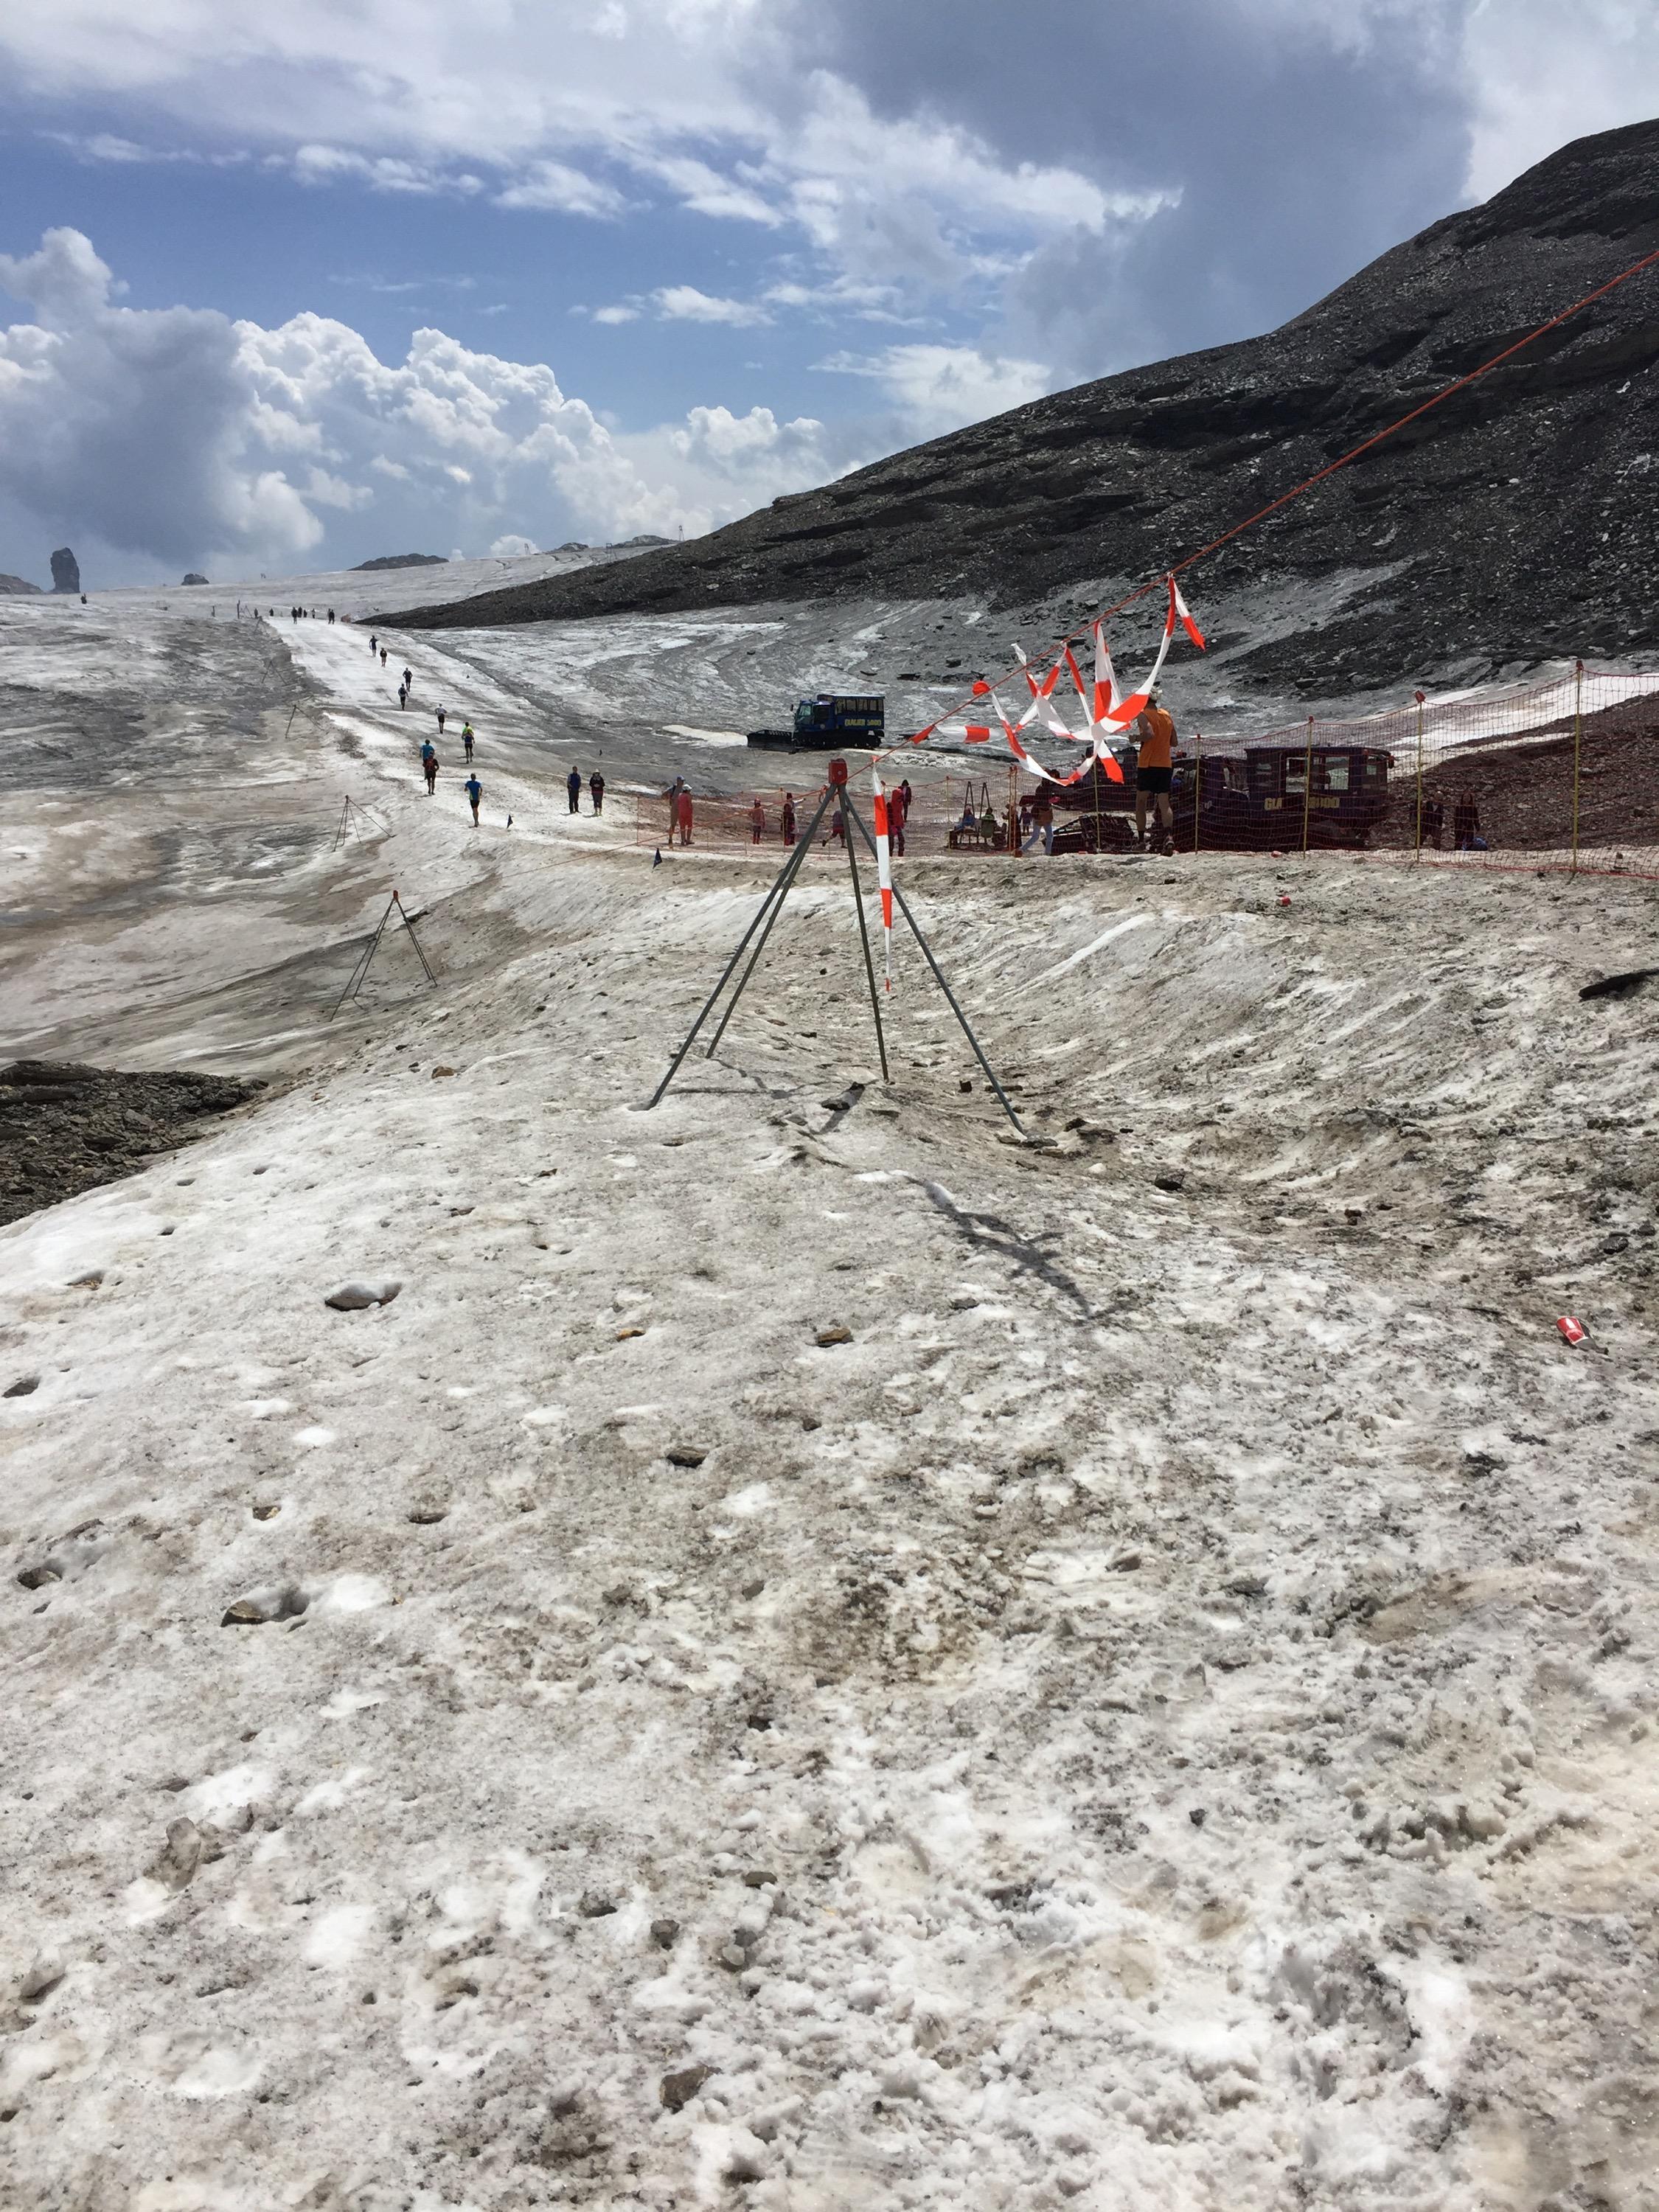 GLACIER 3000 RUN 2015 Auf dem Gletscher